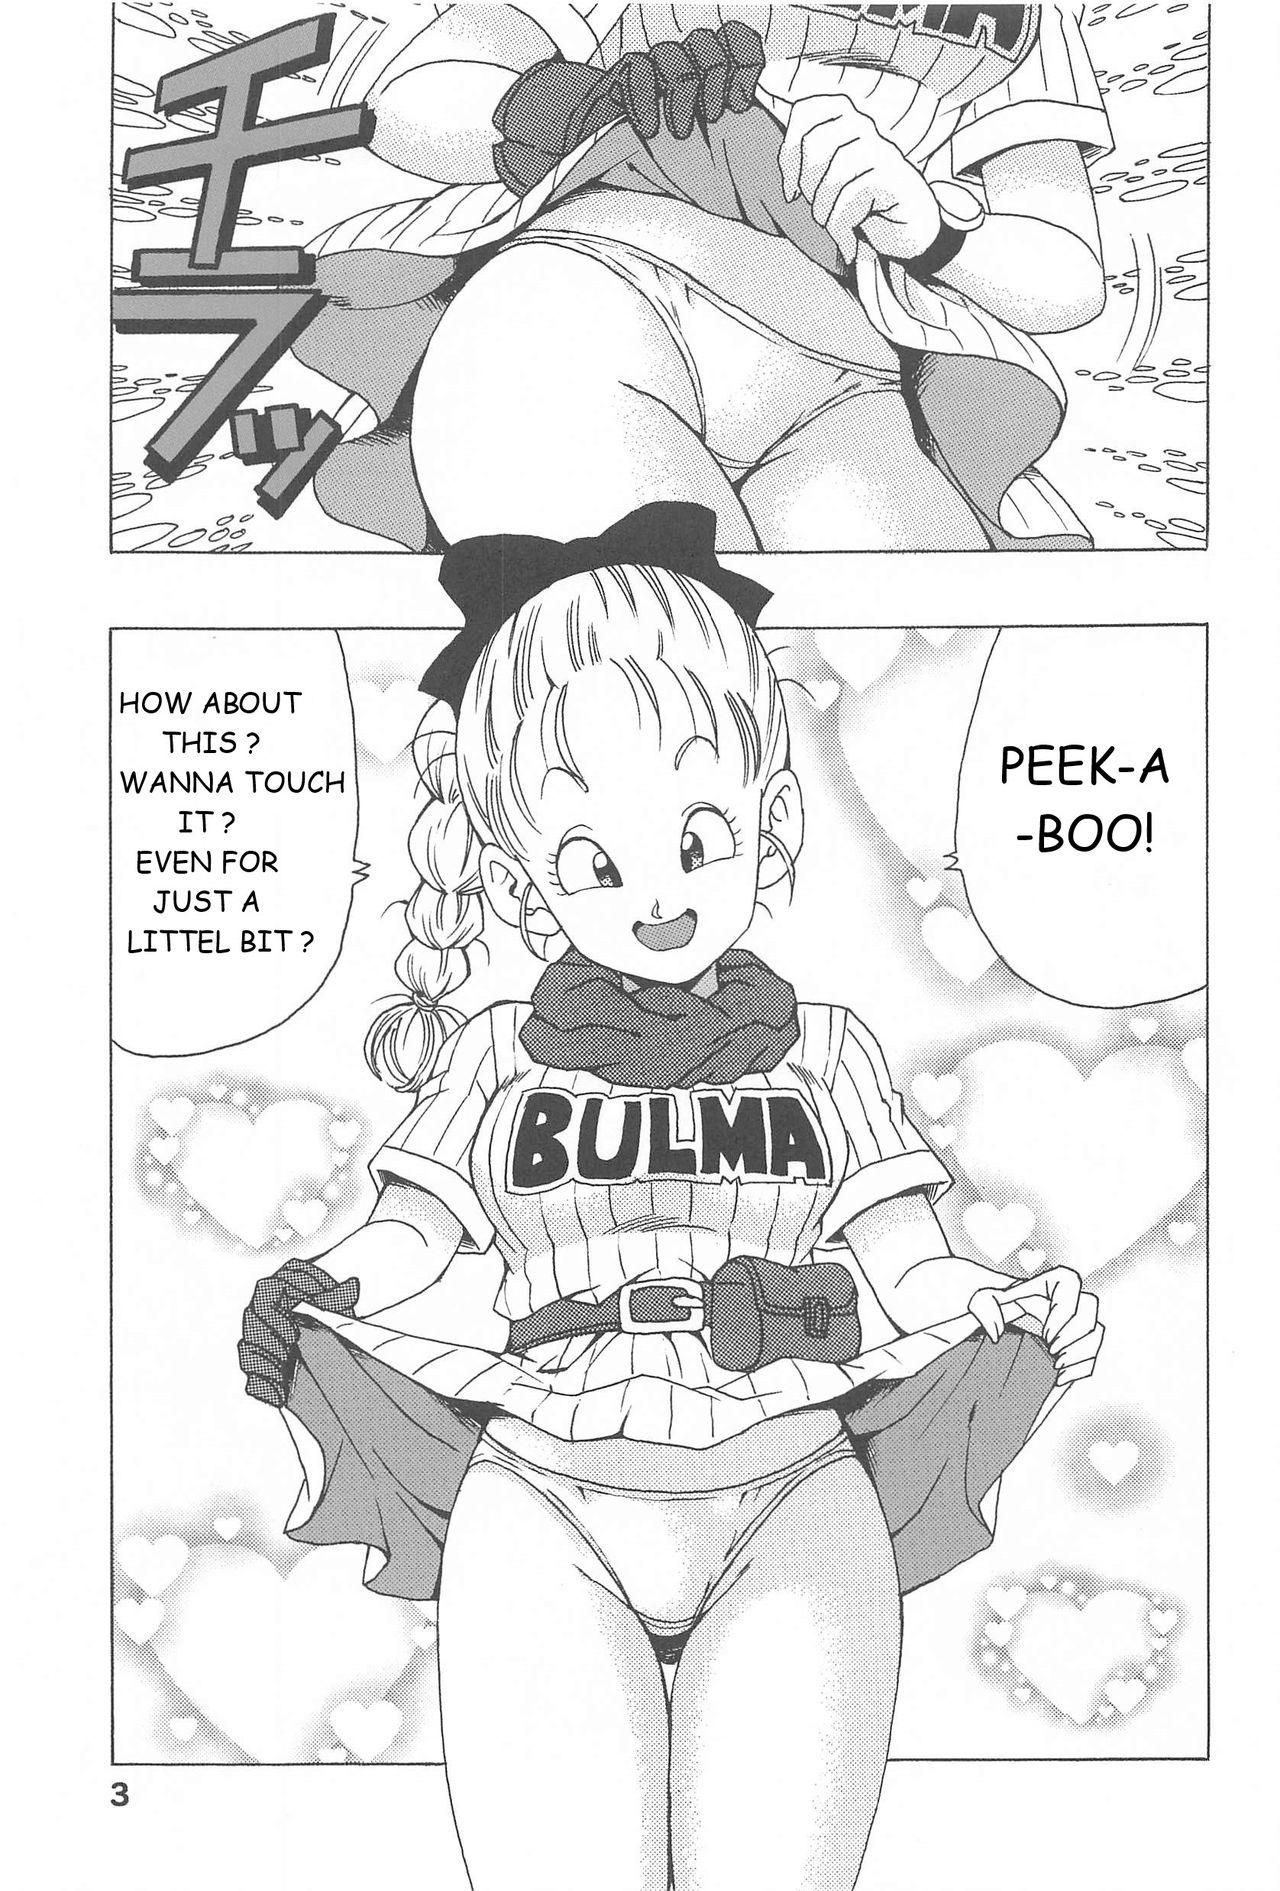 Women Sucking Bulma no Saikyou e no Michi - Dragon ball Real Sex - Page 3